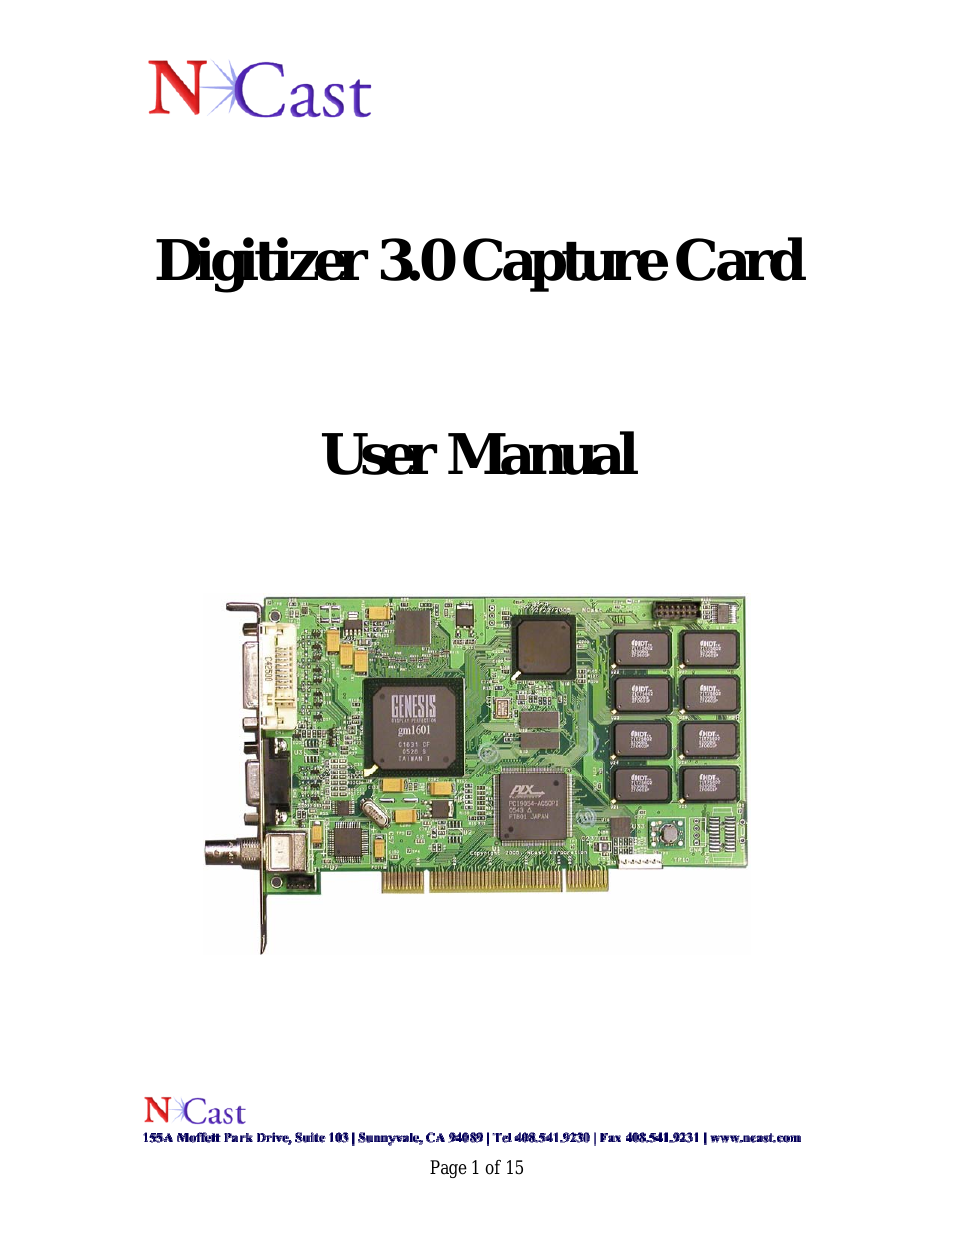 Digitizer Capture Card v3.0